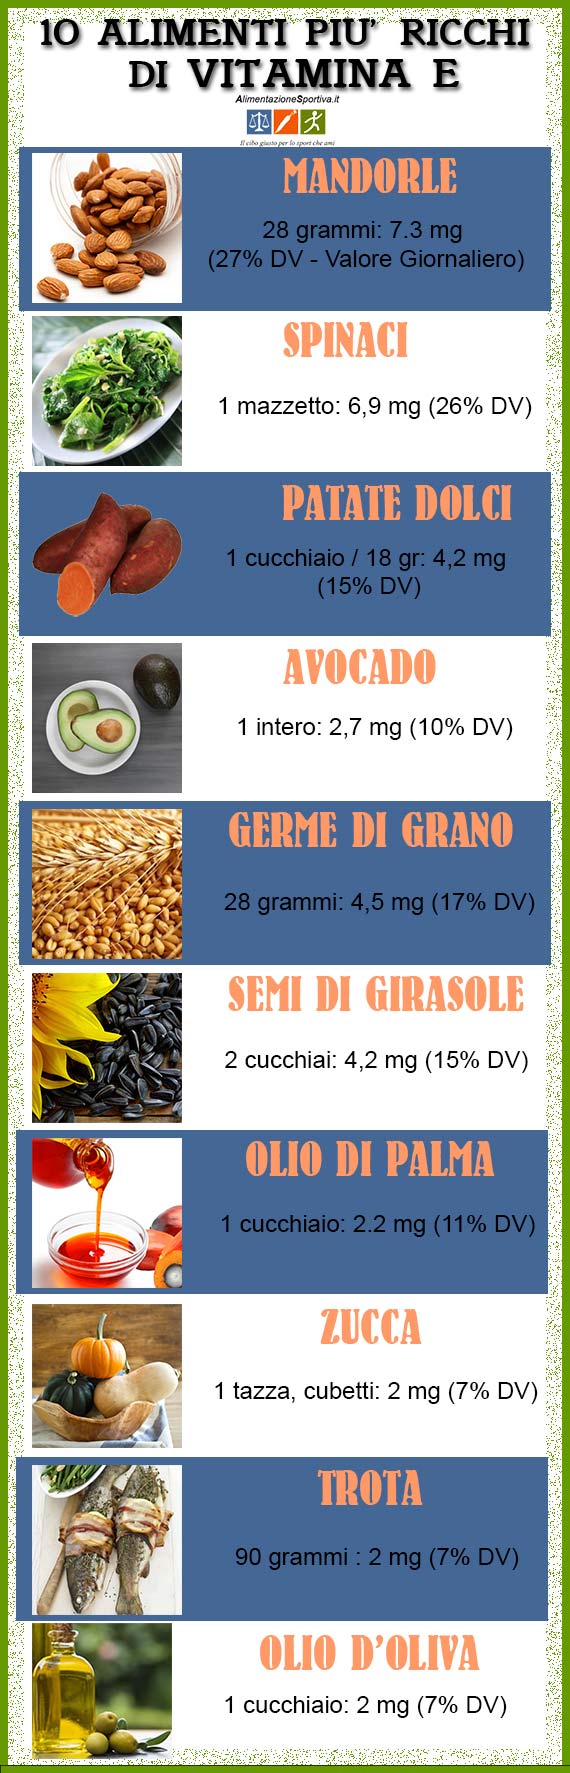 Lista alimenti ricchi di vitamina E